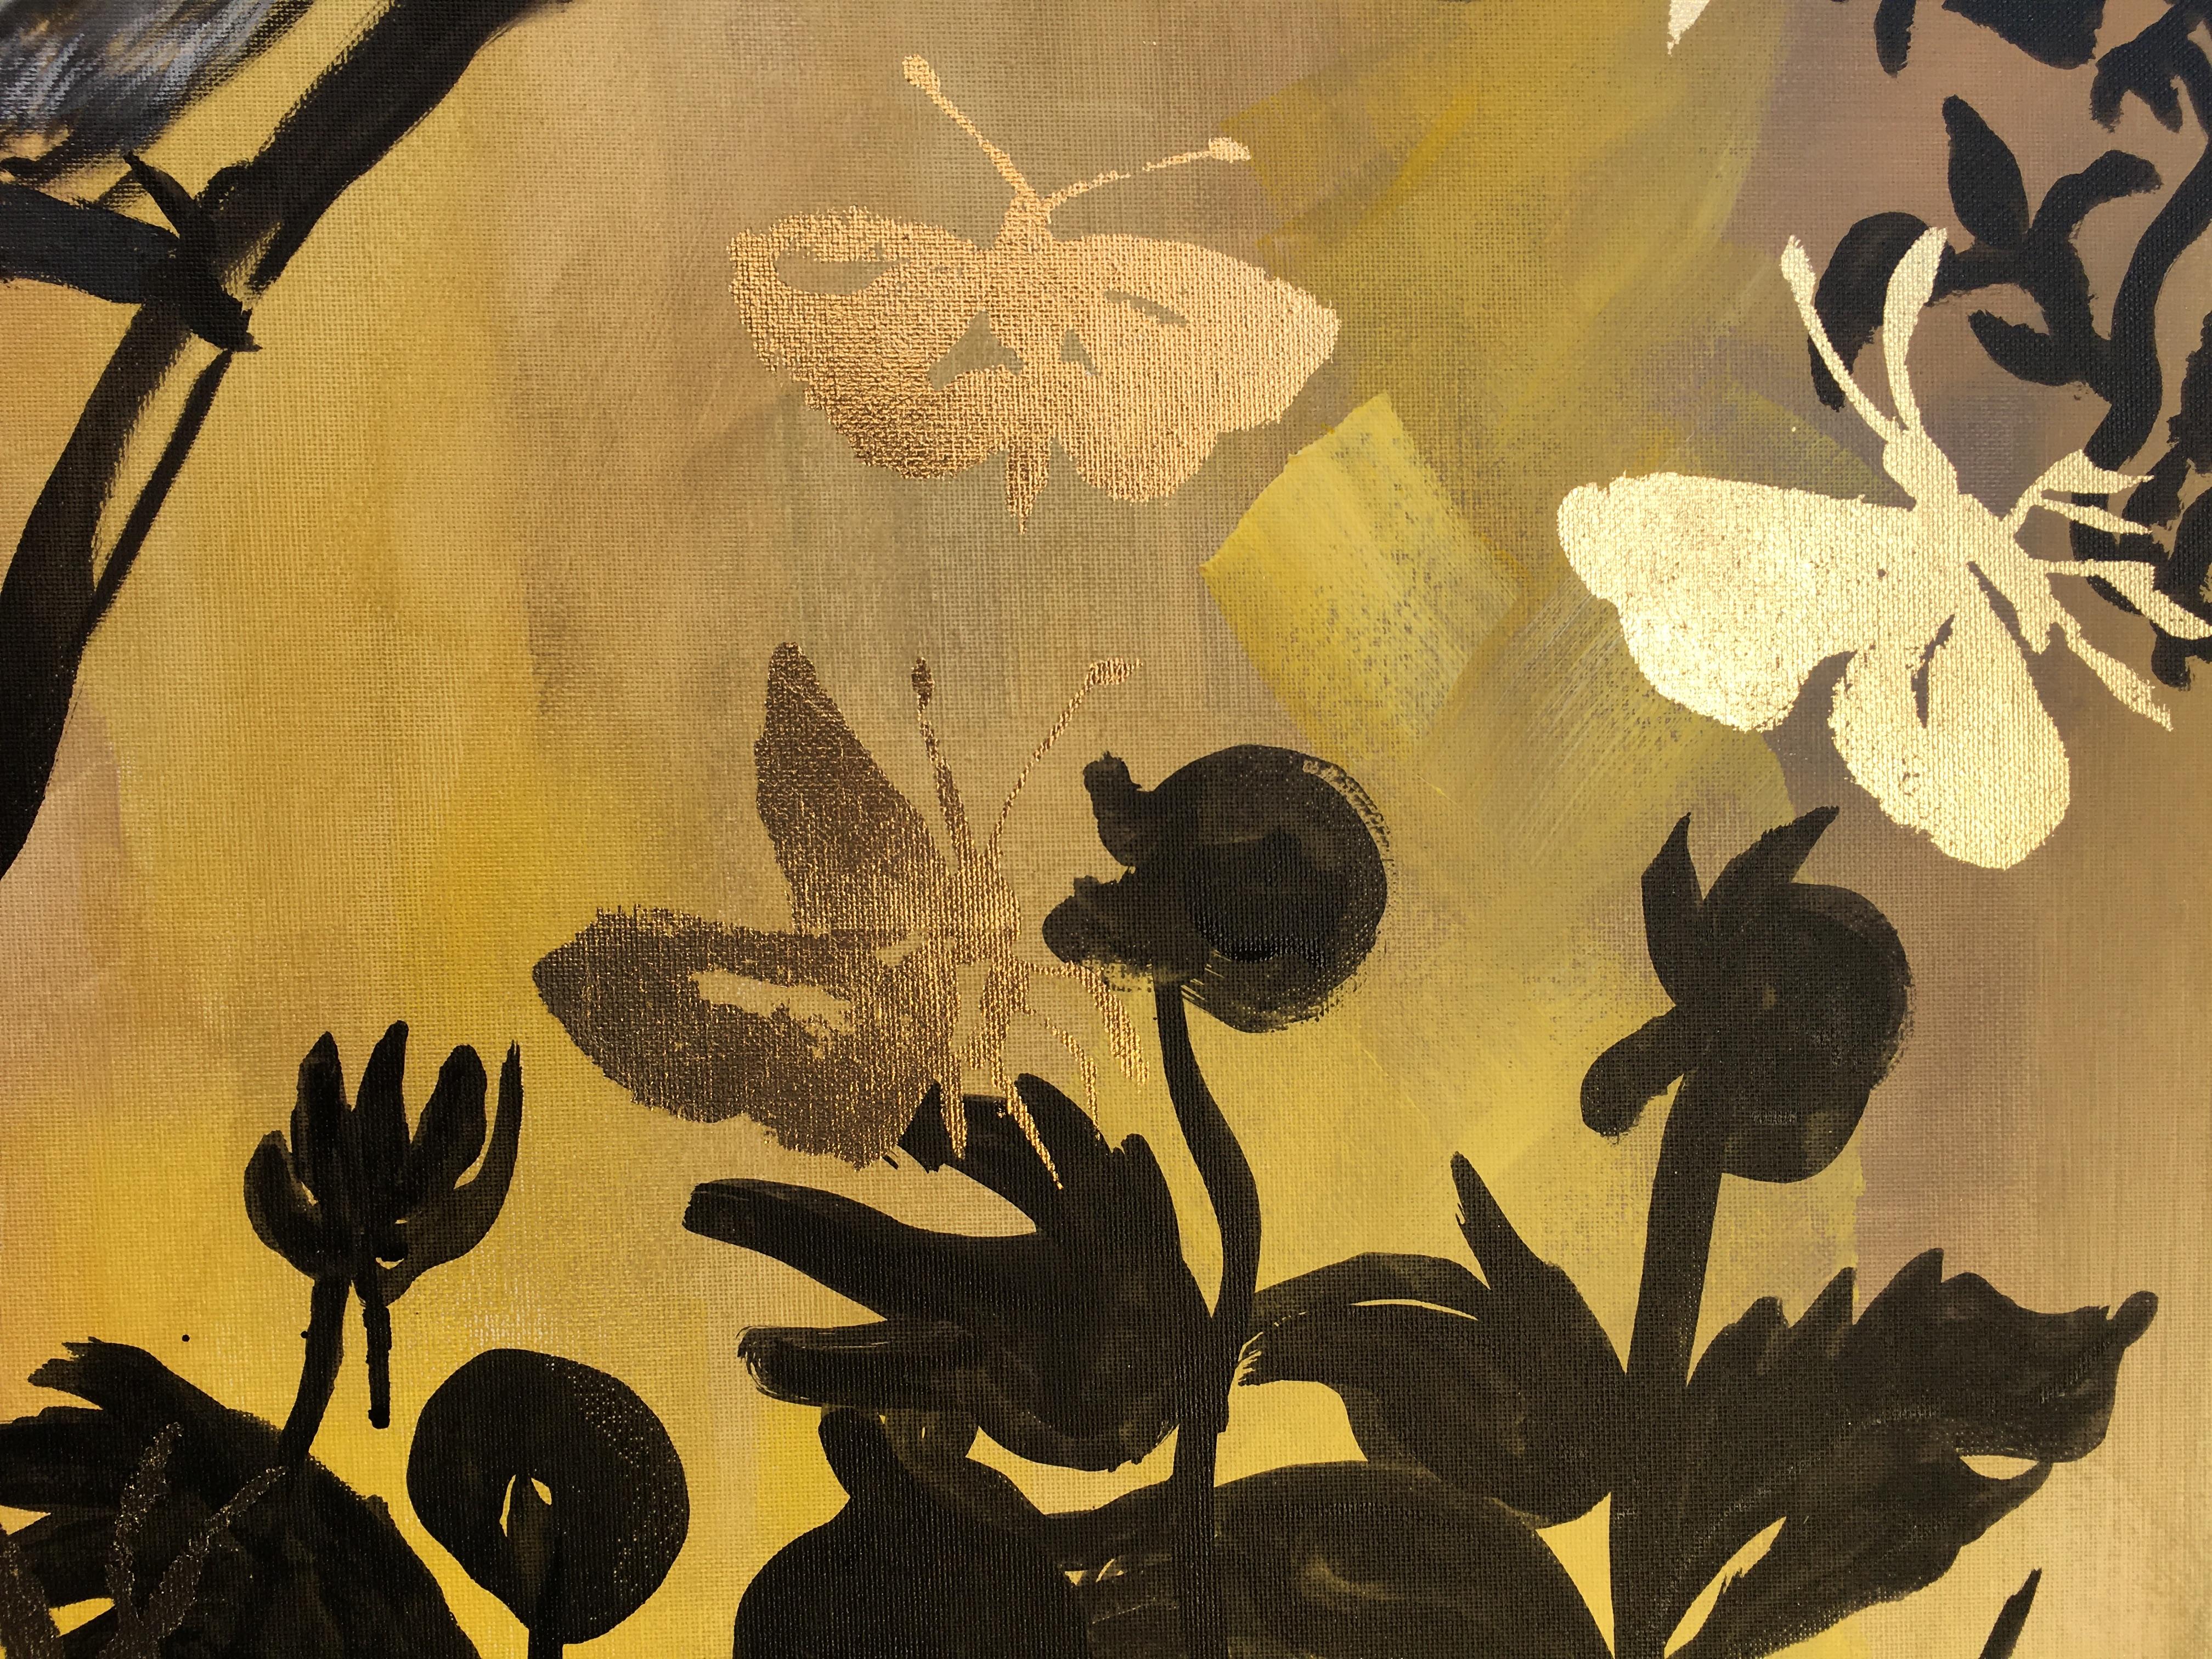 Primary Colour Series-Jay and Butterflies ist eines der neuesten Projekte von Shizico Yi, das vom japanischen Holzschnitt inspiriert ist und eine Anspielung auf die Tradition der Kalligrafie darstellt.
Die Serie ist eine Fortsetzung ihrer 